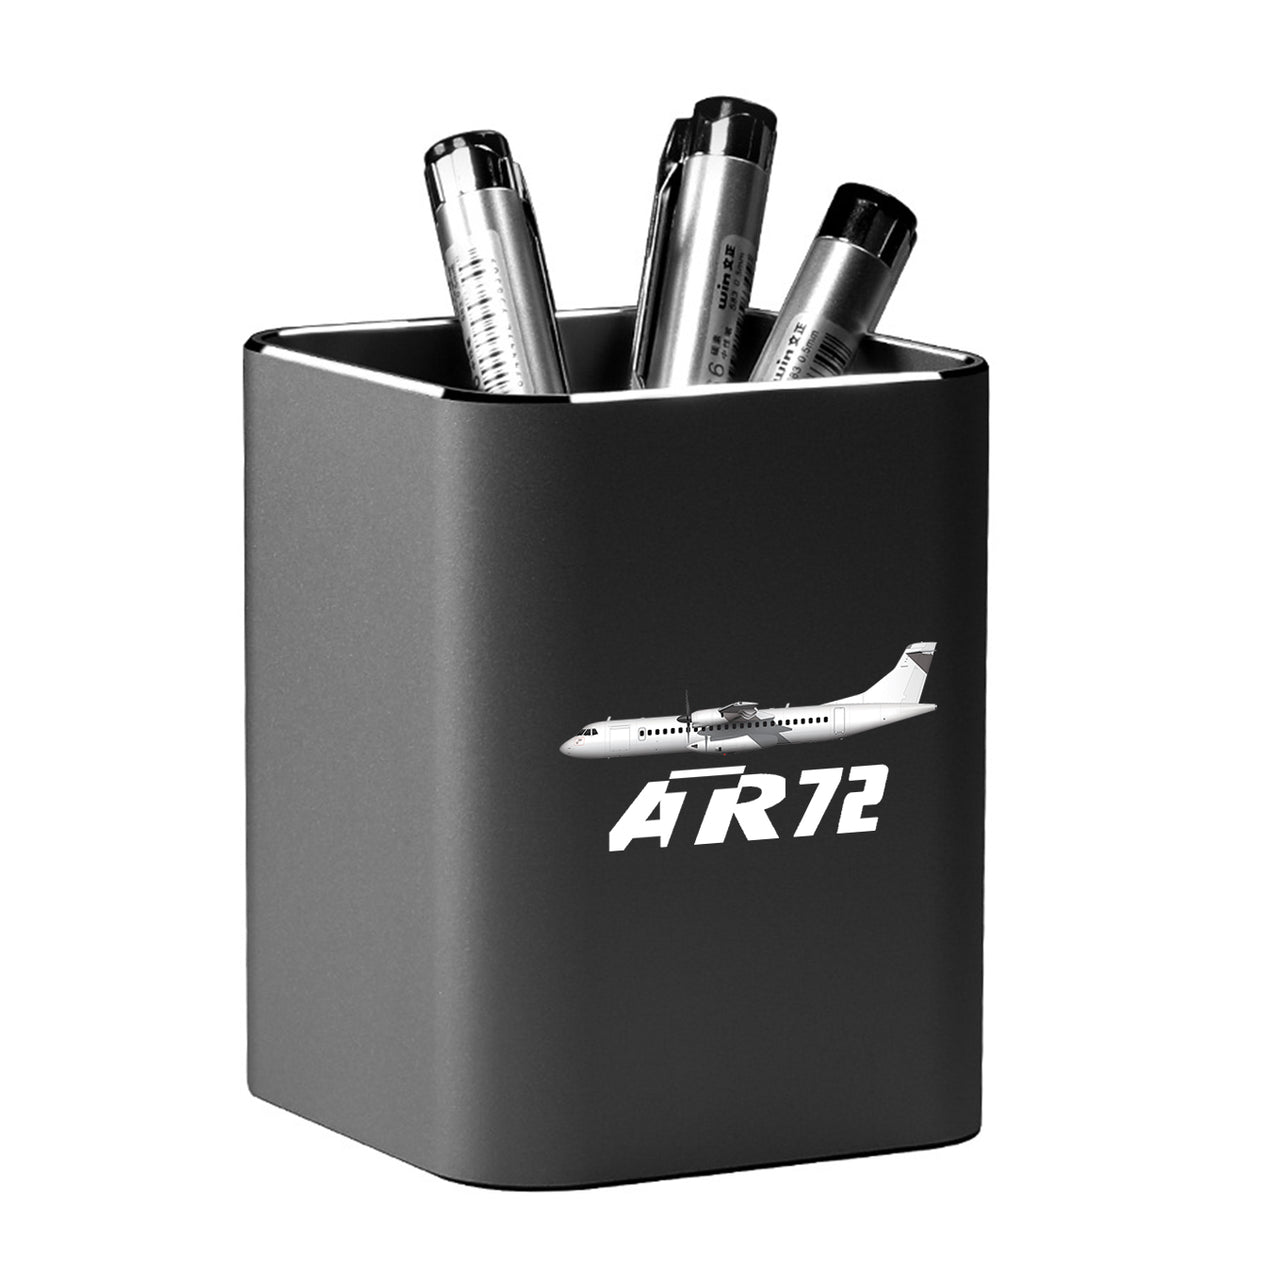 The ATR72 Designed Aluminium Alloy Pen Holders